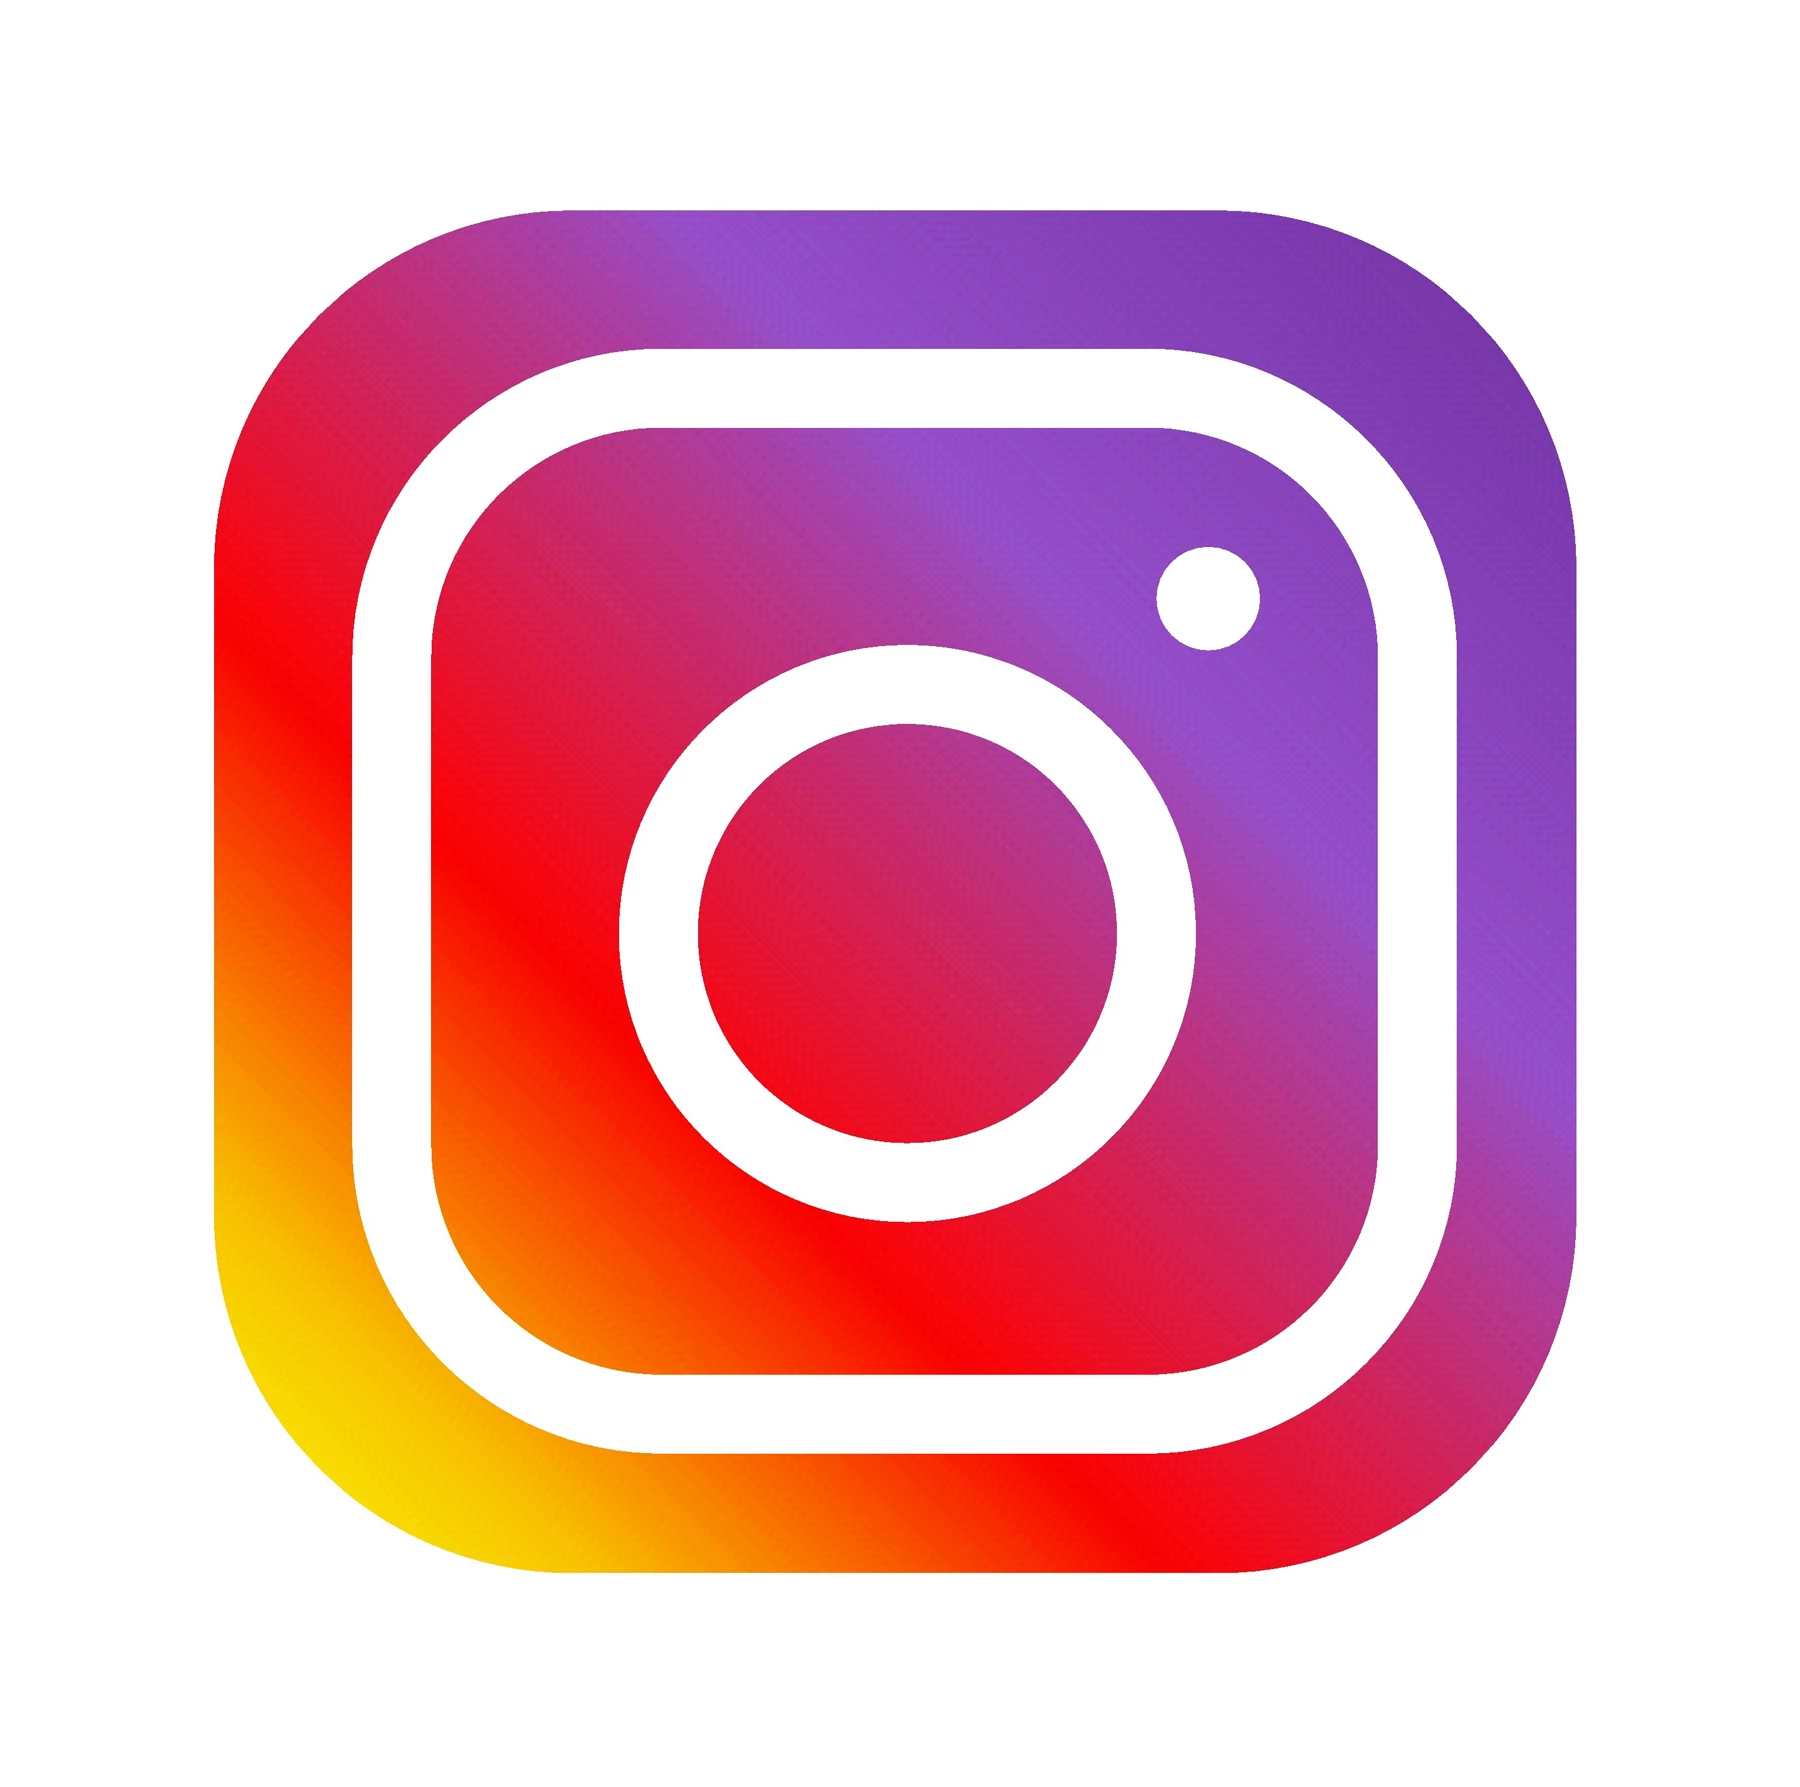 The Instagram app logo